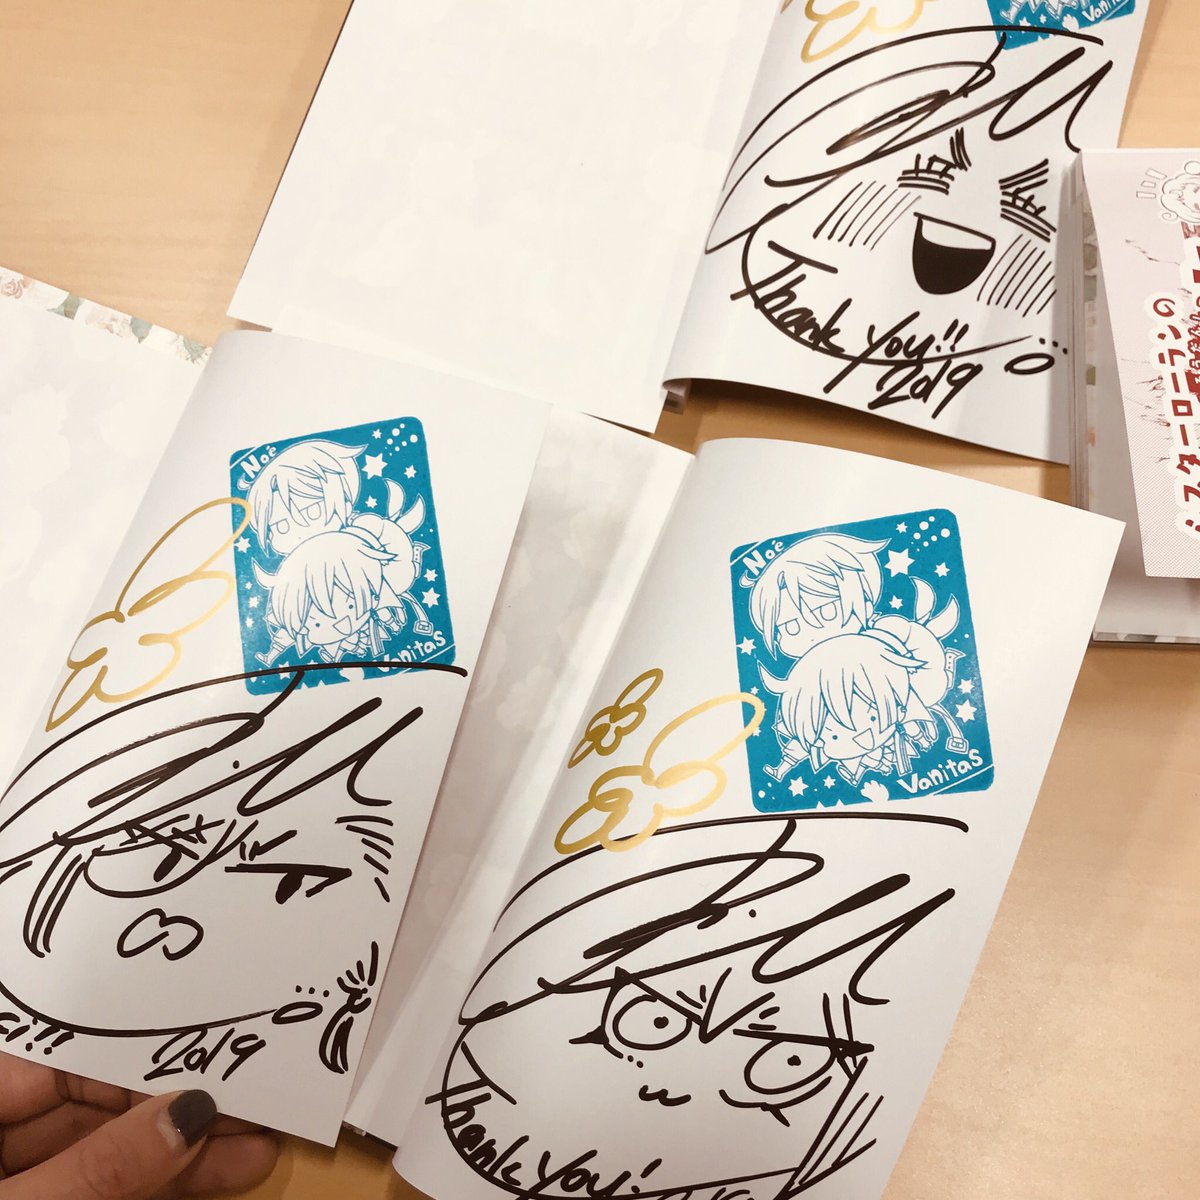 こちらのサイン本は、3月23.24日開催のAnimeJapanのスクエニブースにて販売していただけるとのことです。

色んな顔を描かせていただきましたので、宜しければ是非是非〜 